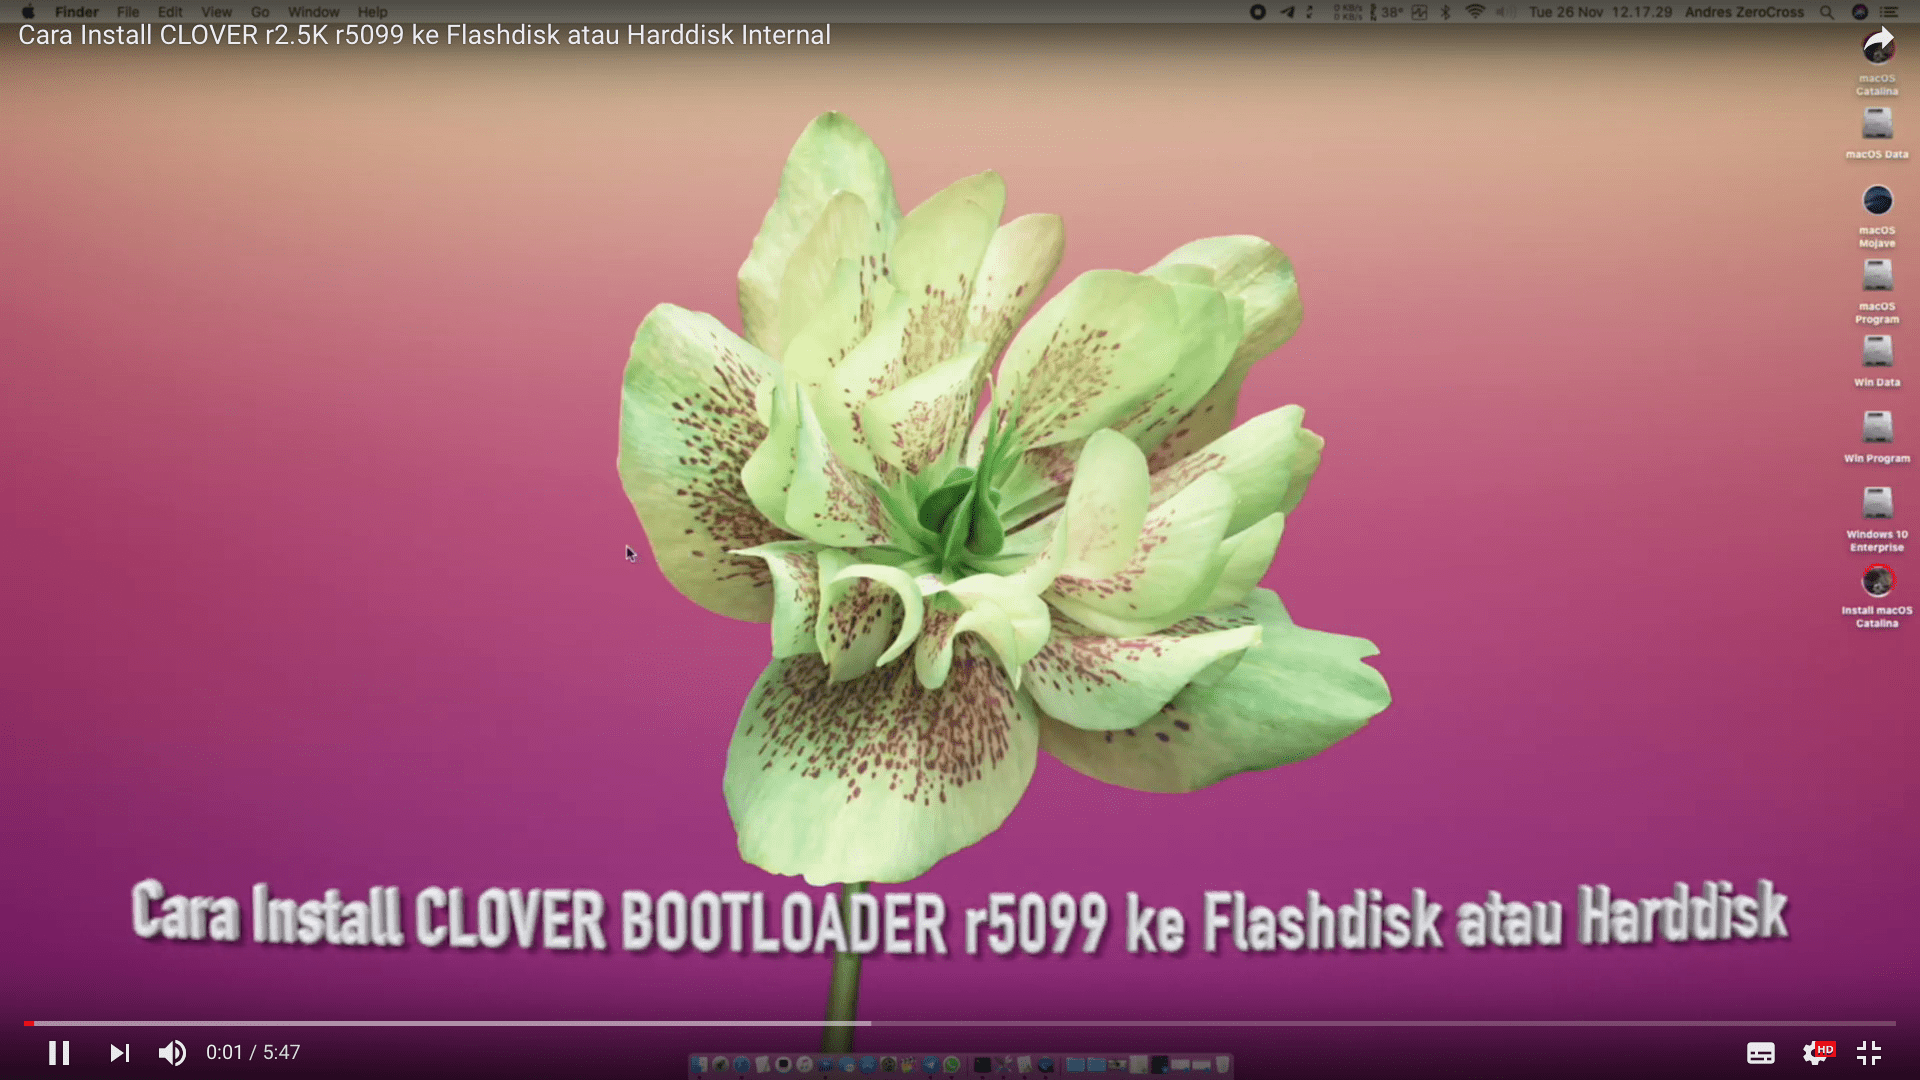 Tutorial Install Clover Bootloader r5099 di Flashdisk / Harddisk Internal